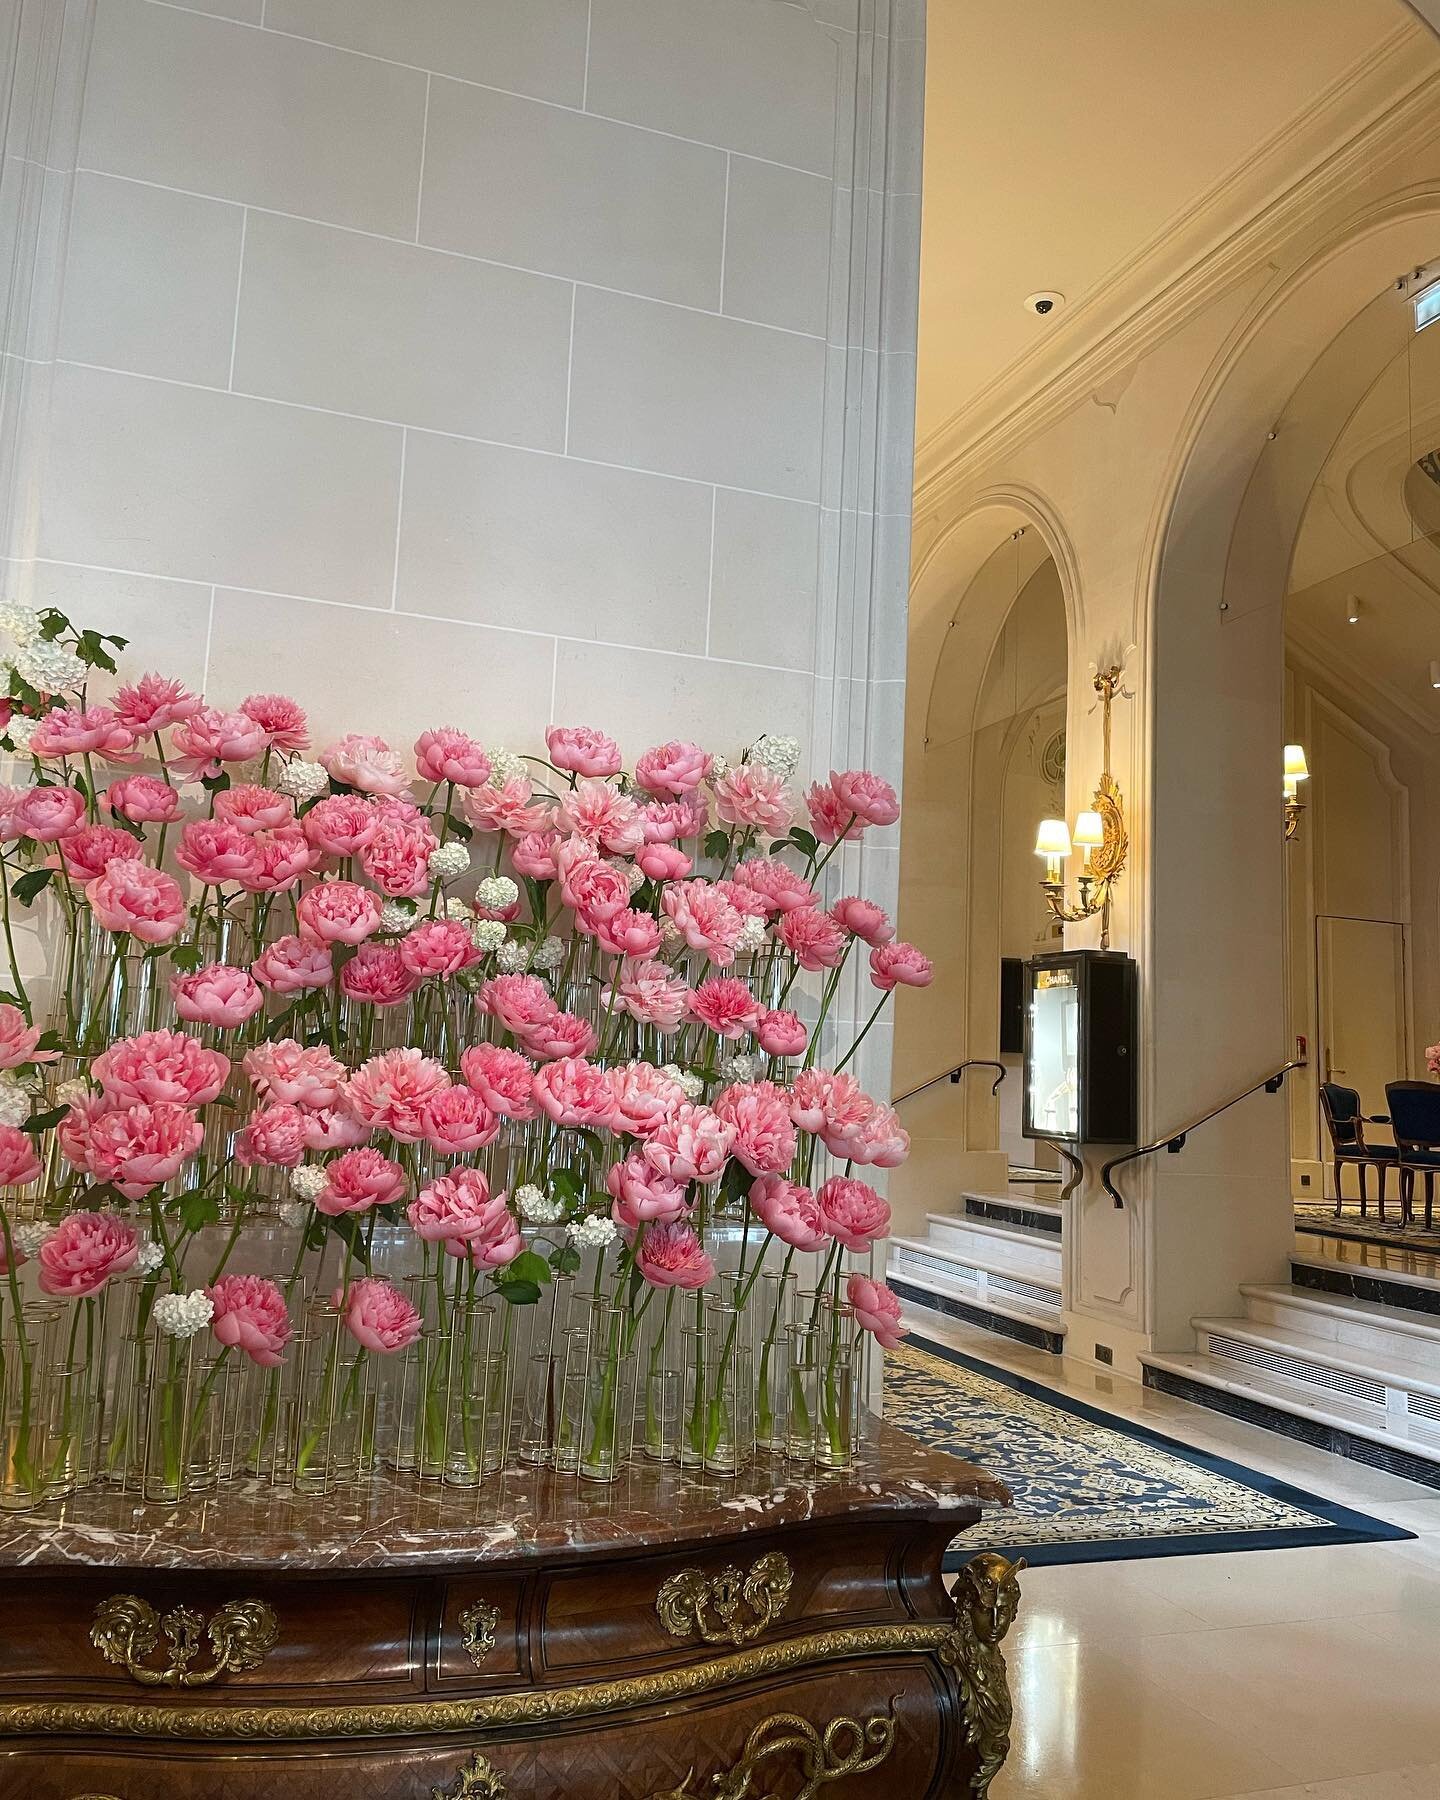 そしてRitz Paris🇫🇷

由美さんが以前こちらで働かれていた時の話も聞けて、素敵な装花も見れて本当に大満足な経験！

そして星座モチーフのバーがあったの🥹✨星月大好きなのでまたもう一度訪れたい!!

そしてトイレまでもが素敵すぎた

夢のような1日が終わり、明日からはレッスンも始まります😌💐

#パリ短期花留学#花屋さん#フローリスト#パリ#ホテル装花#florist#paris